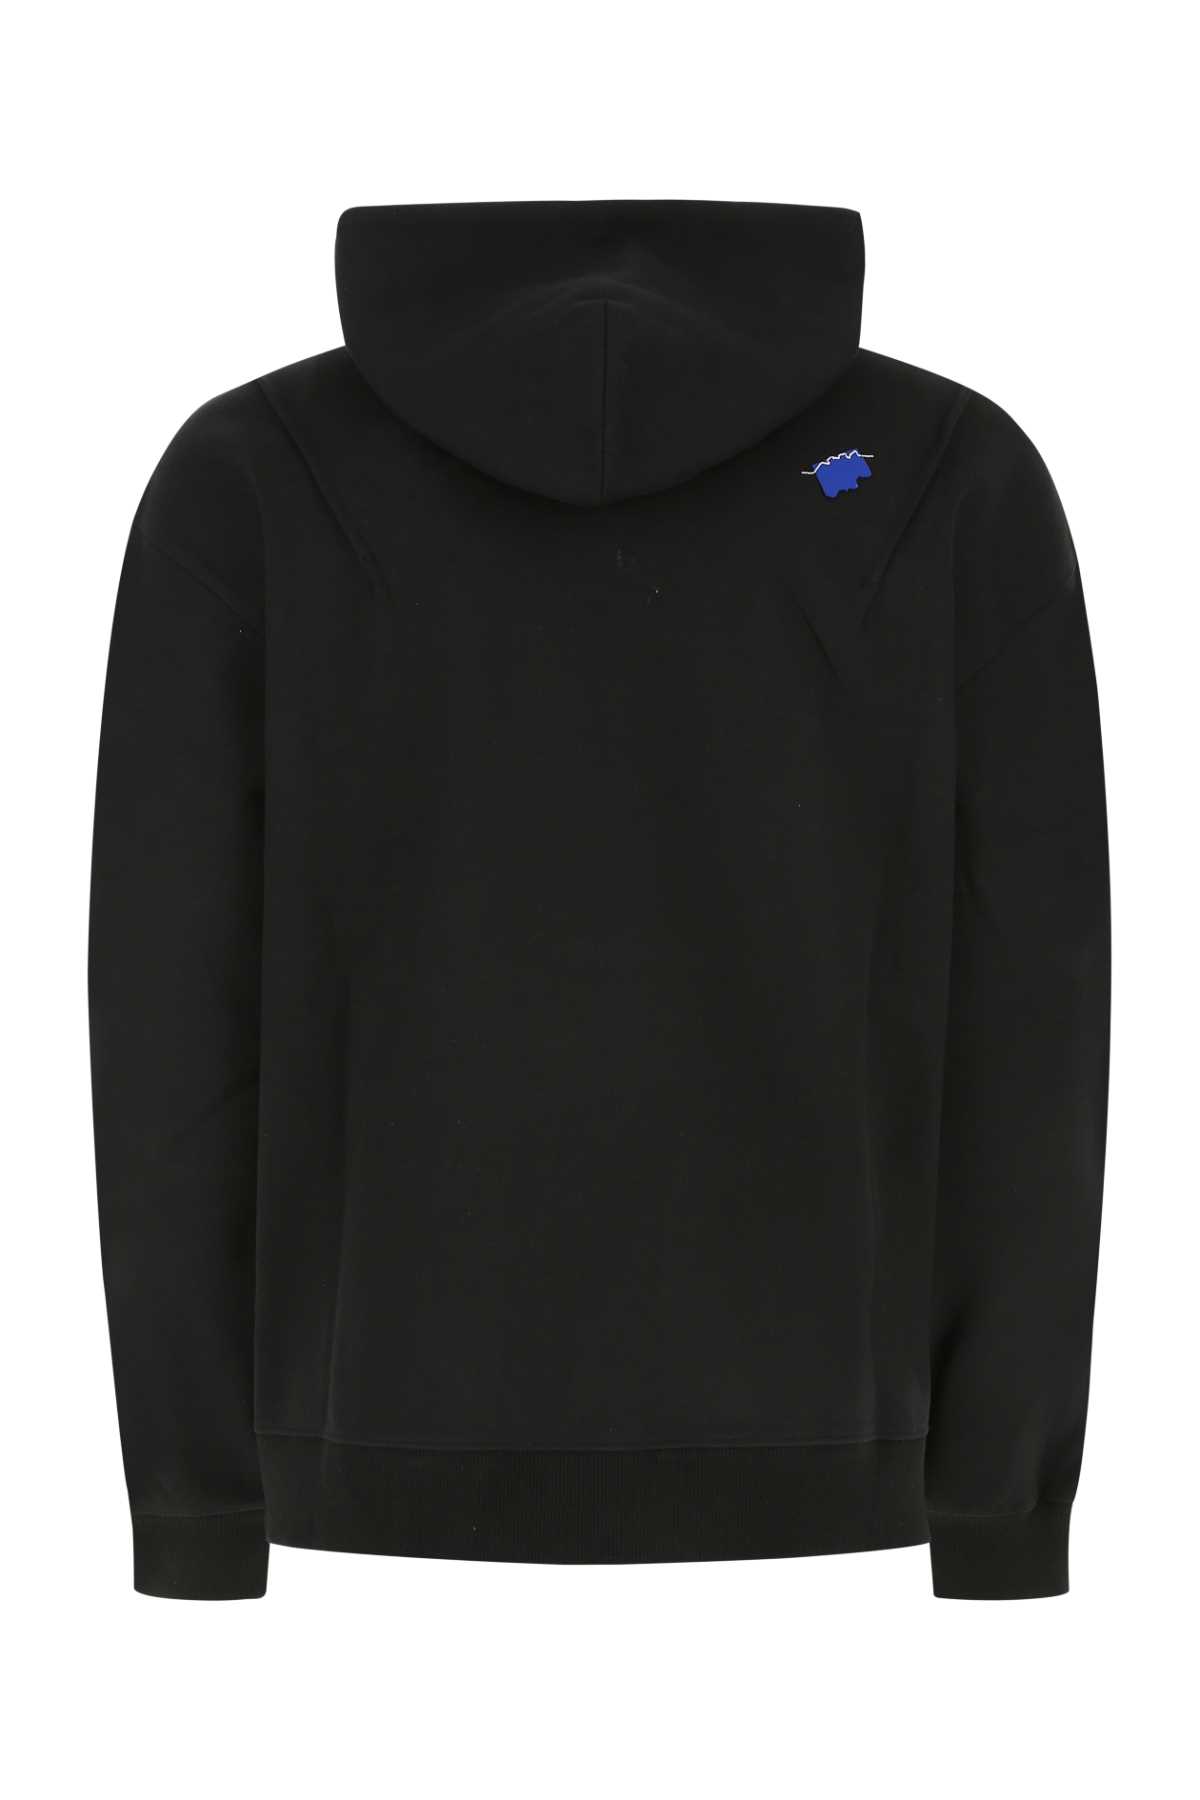 Shop Ader Error Black Cotton Blend Oversize Sweatshirt